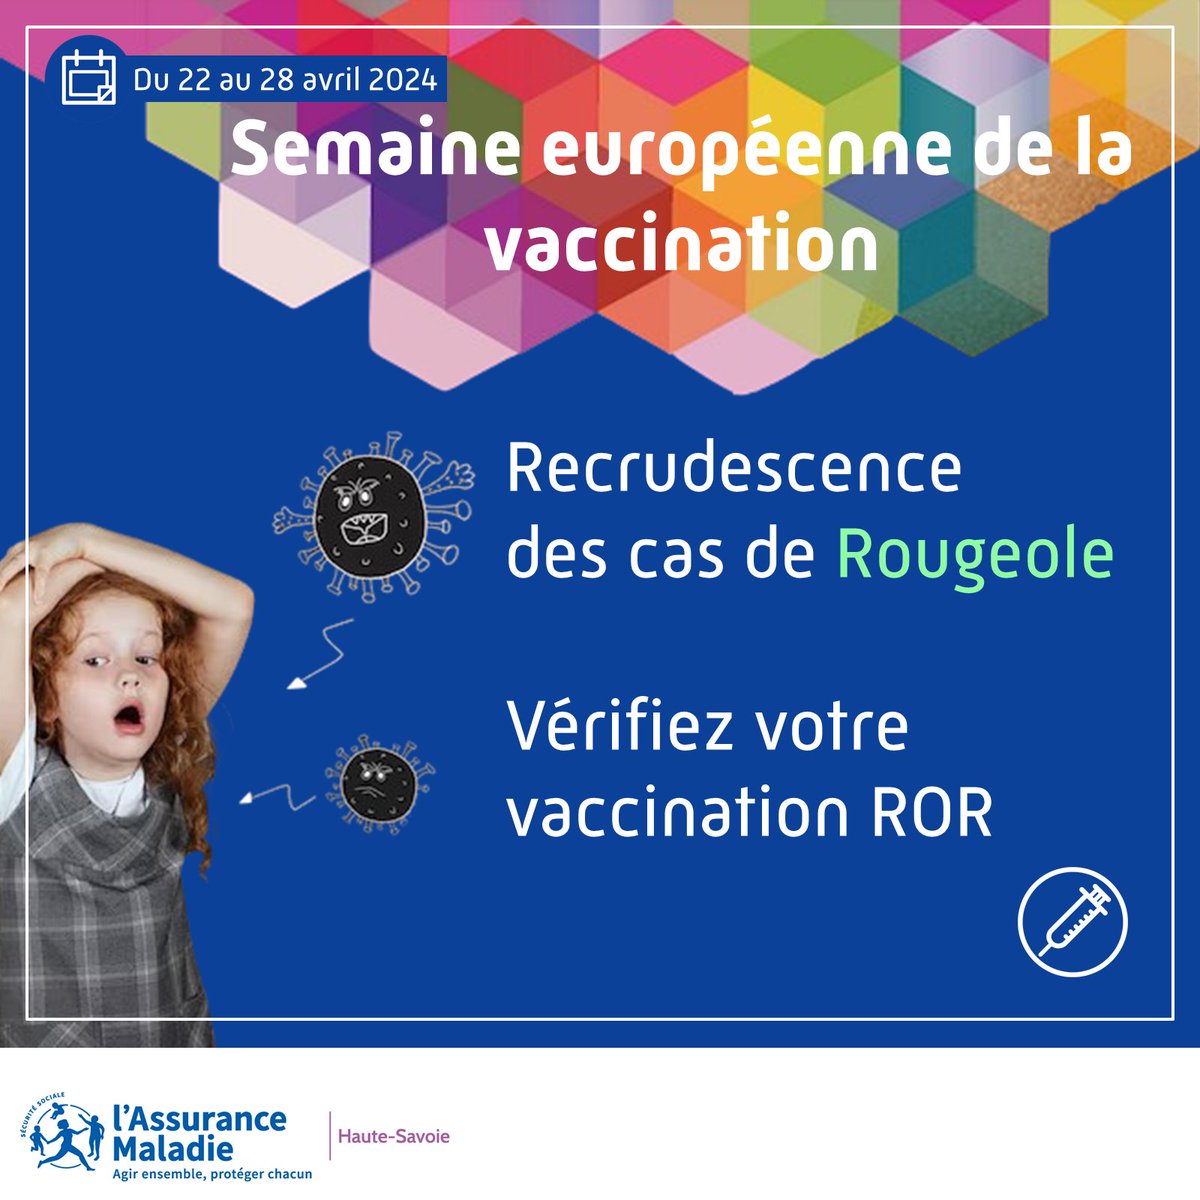 #SEV2024💉 Recrudescence des cas de #rougeole (X8 en 2023) en #RhoneAlpes Vérifiez avoir bien eu 𝟮 𝗱𝗼𝘀𝗲𝘀 𝗱𝗲 𝘃𝗮𝗰𝗰𝗶𝗻 rougeole-oreillons-rubéole (ROR) car ce virus est 10 fois plus contagieux et dangereux que la grippe pour les plus fragiles. 🔗urlr.me/LgGVz